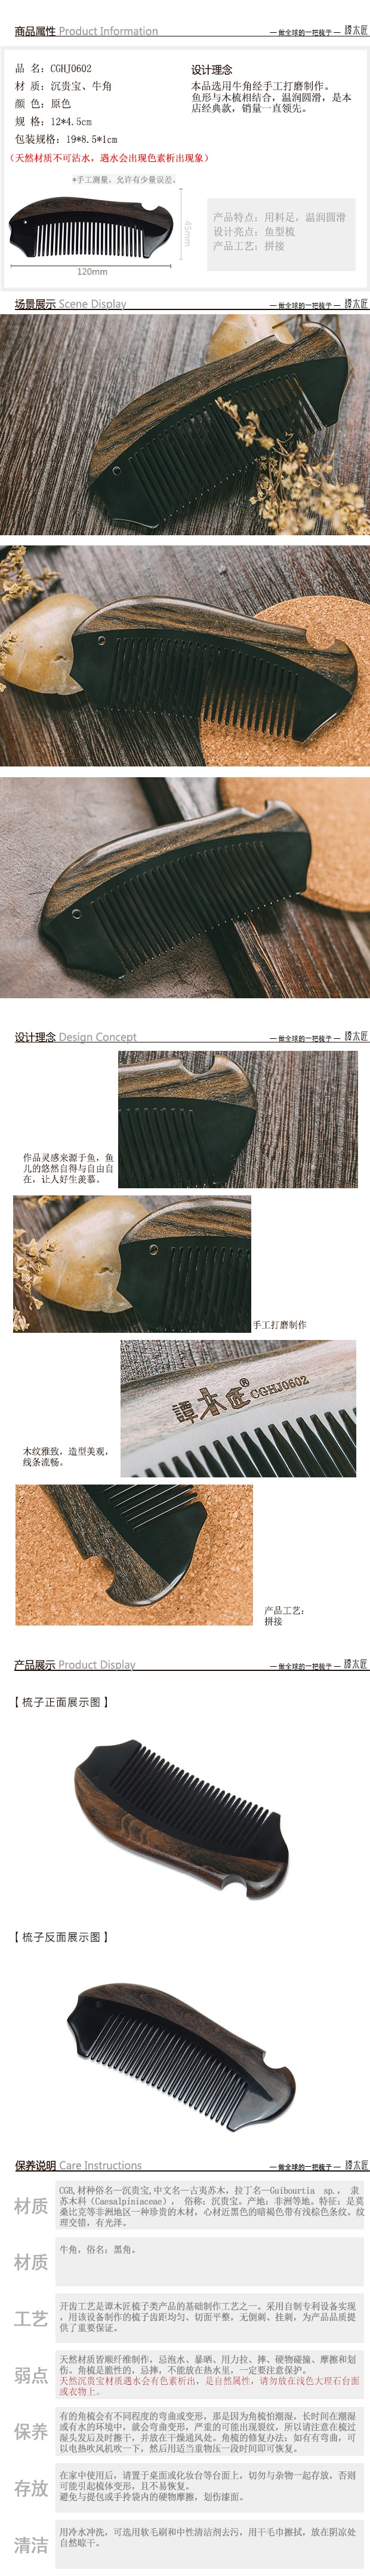 中国谭木匠 牛角梳天然发梳按摩梳 美发长发梳子 1件入